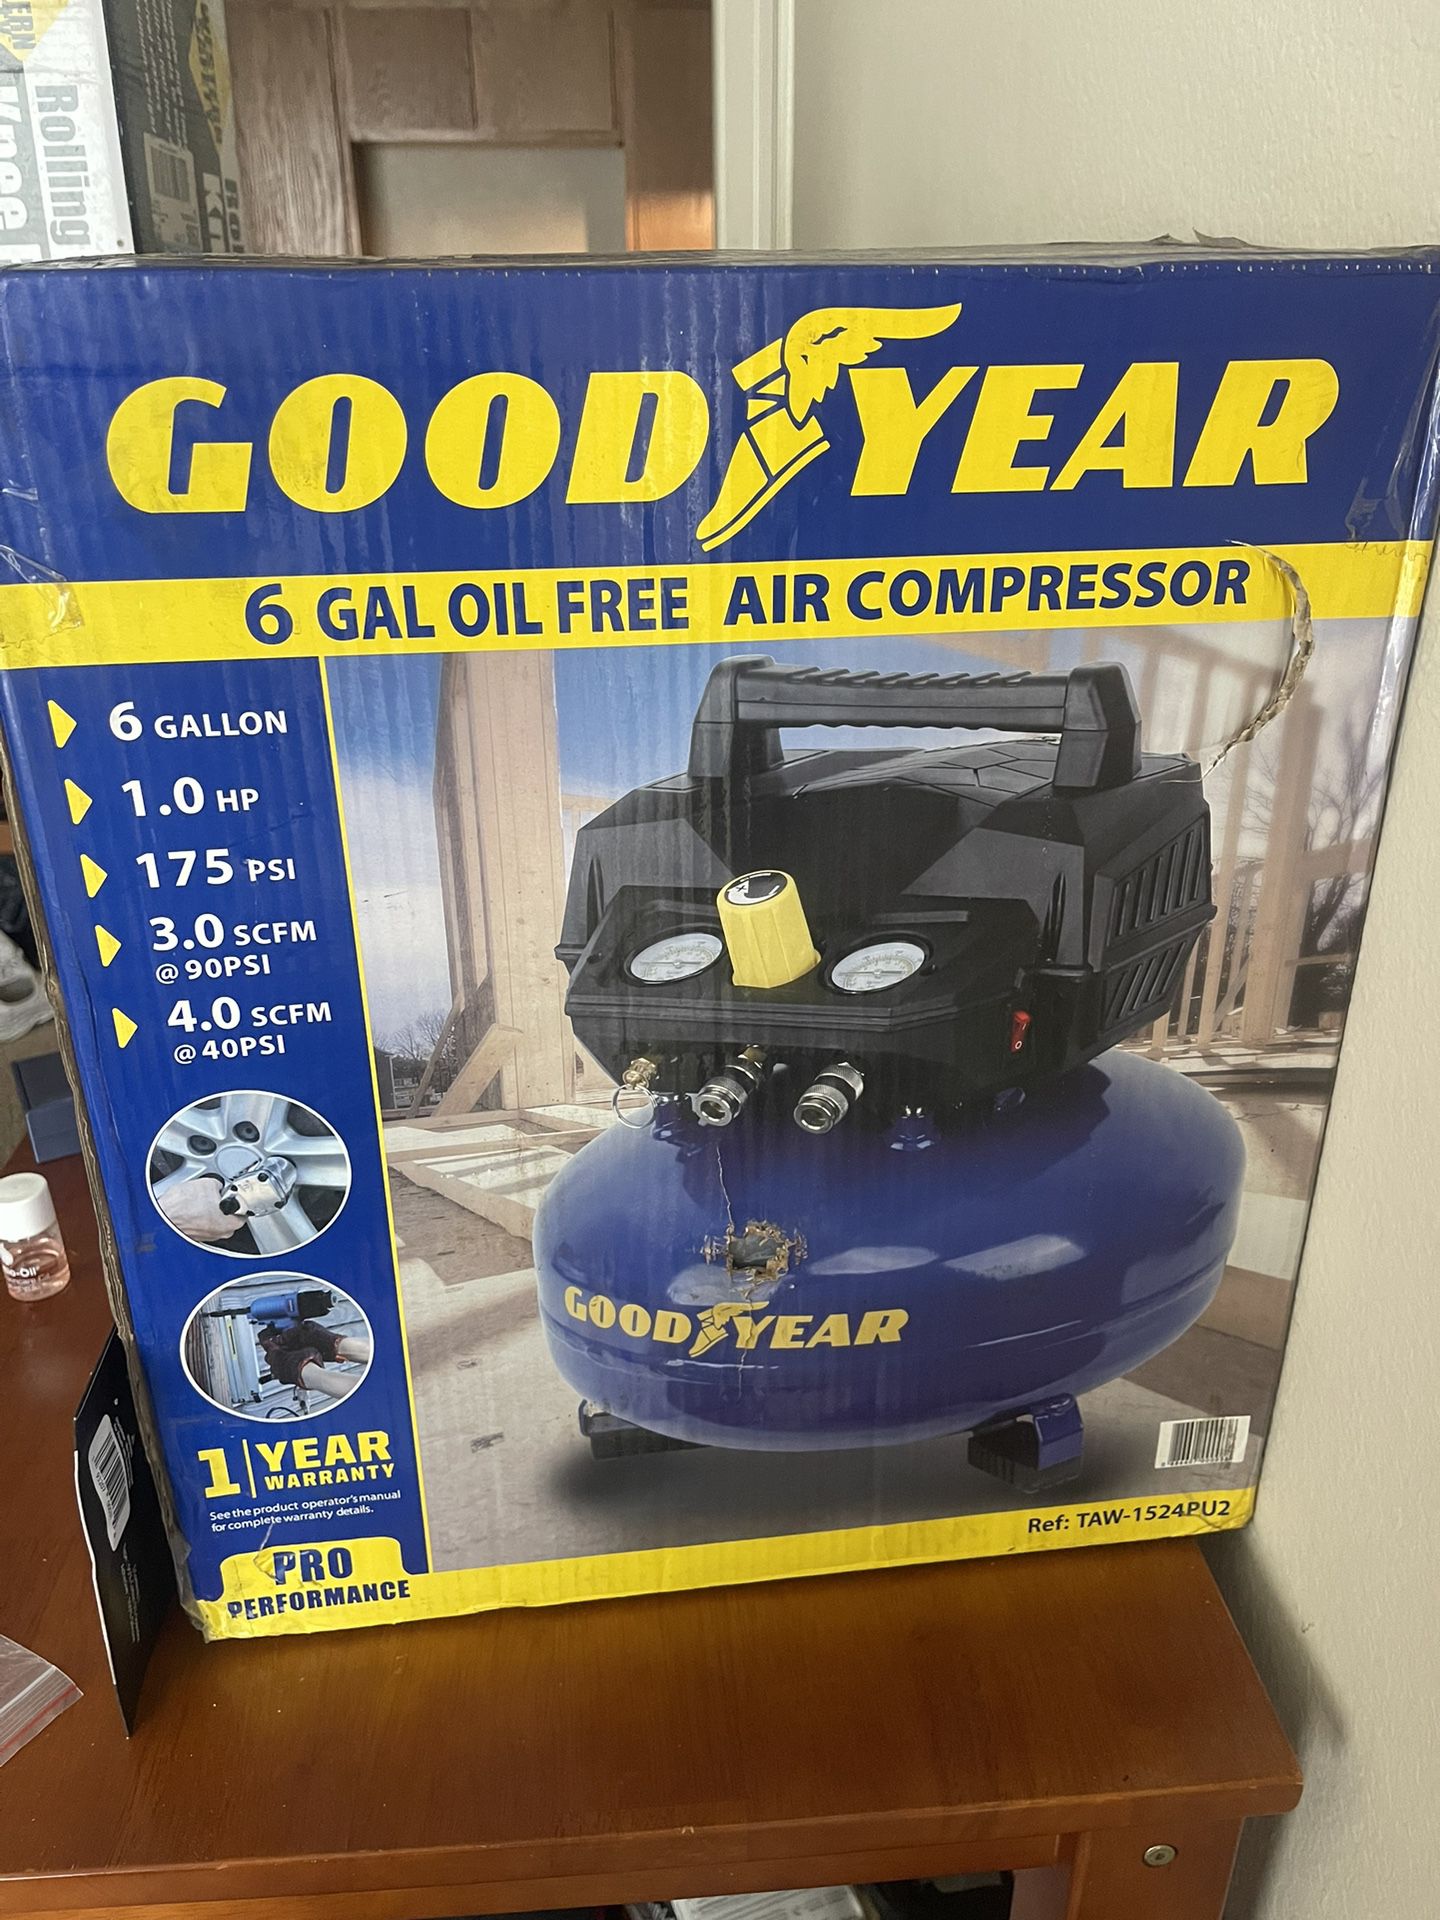 Brand new Air Compressor 